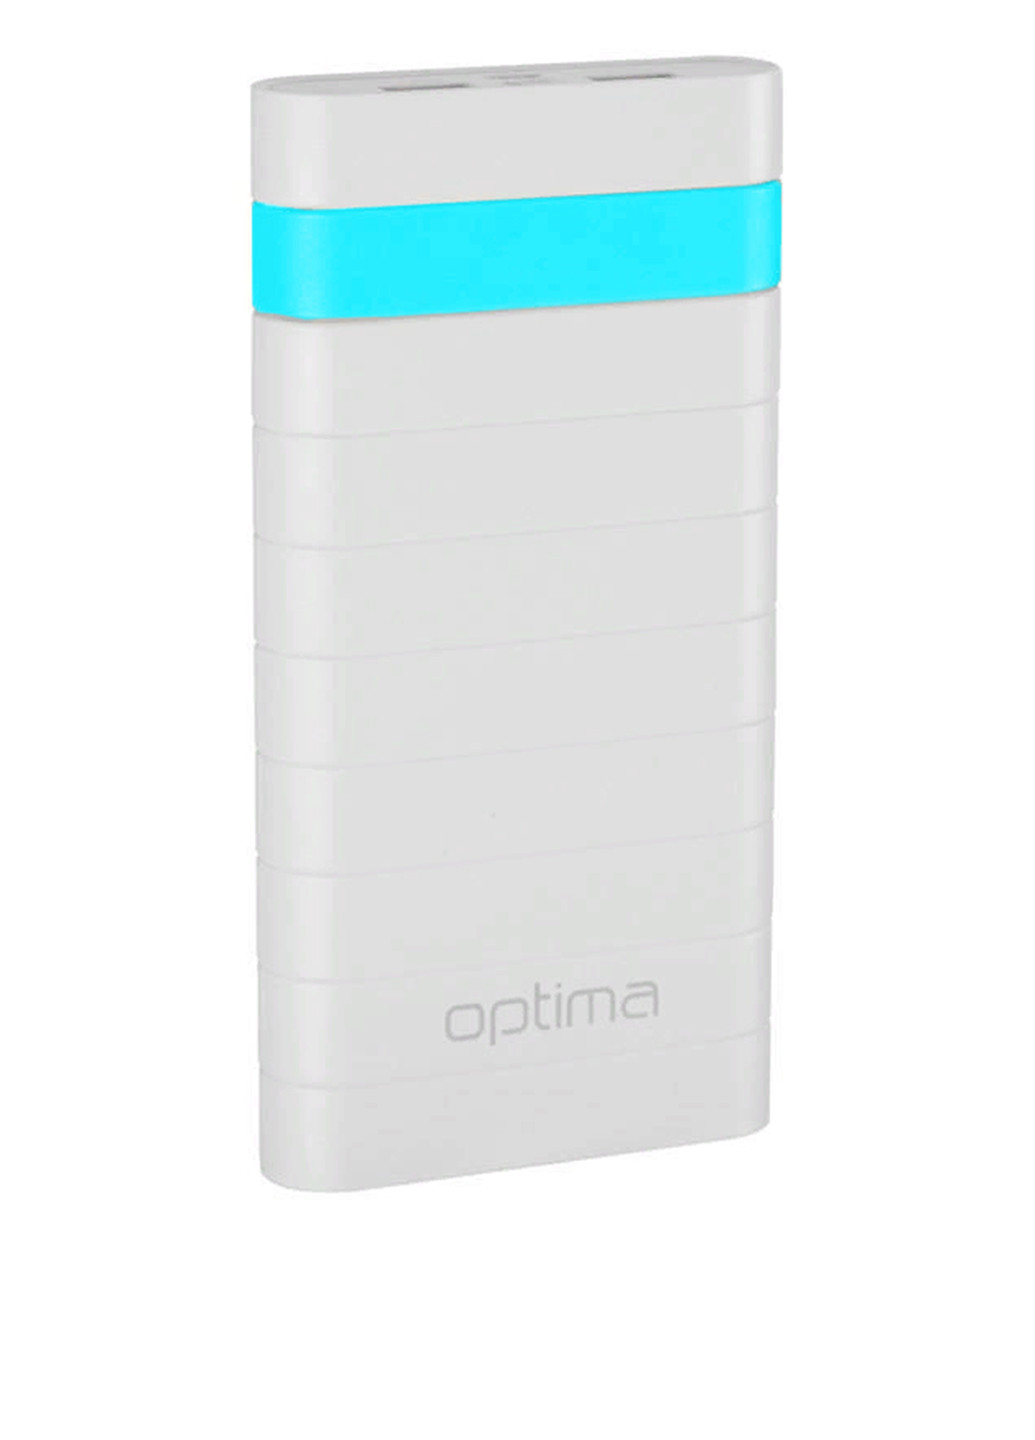 Універсальна батарея Promo Series 20000mAh White / Blue Optima op-20 (130135457)